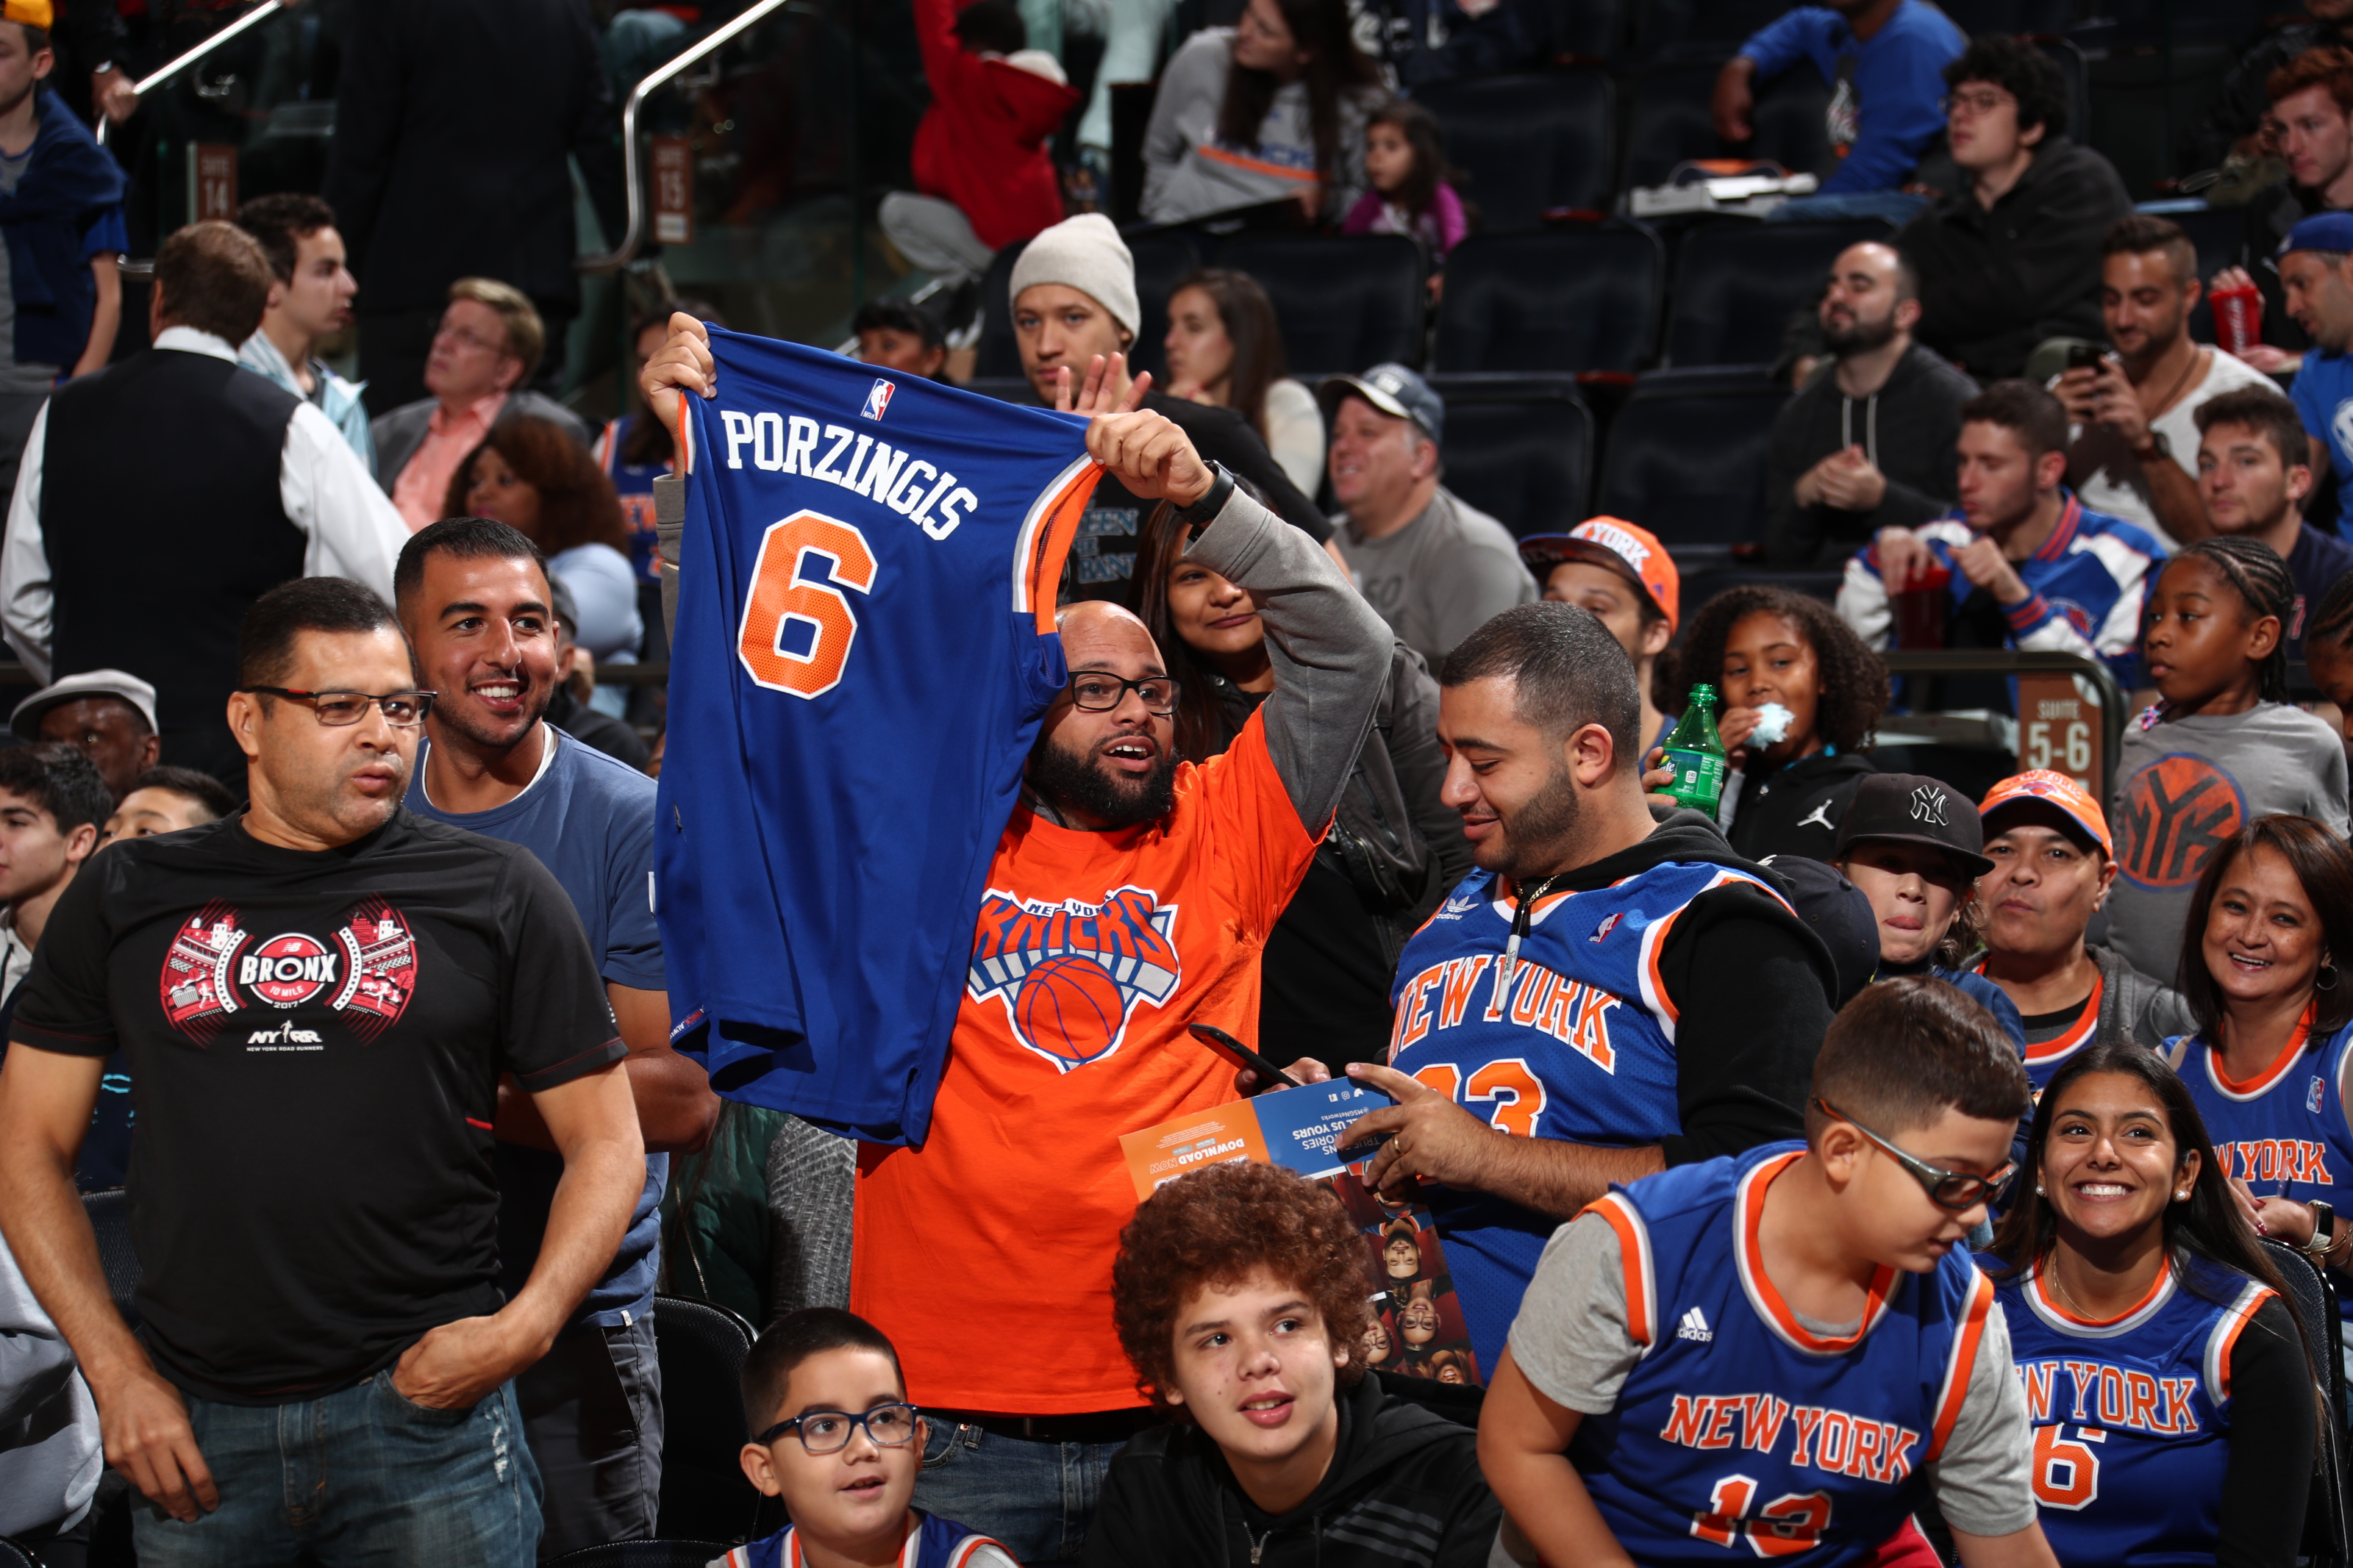 Shouldn't a Knicks fan be the Fan of the Year?